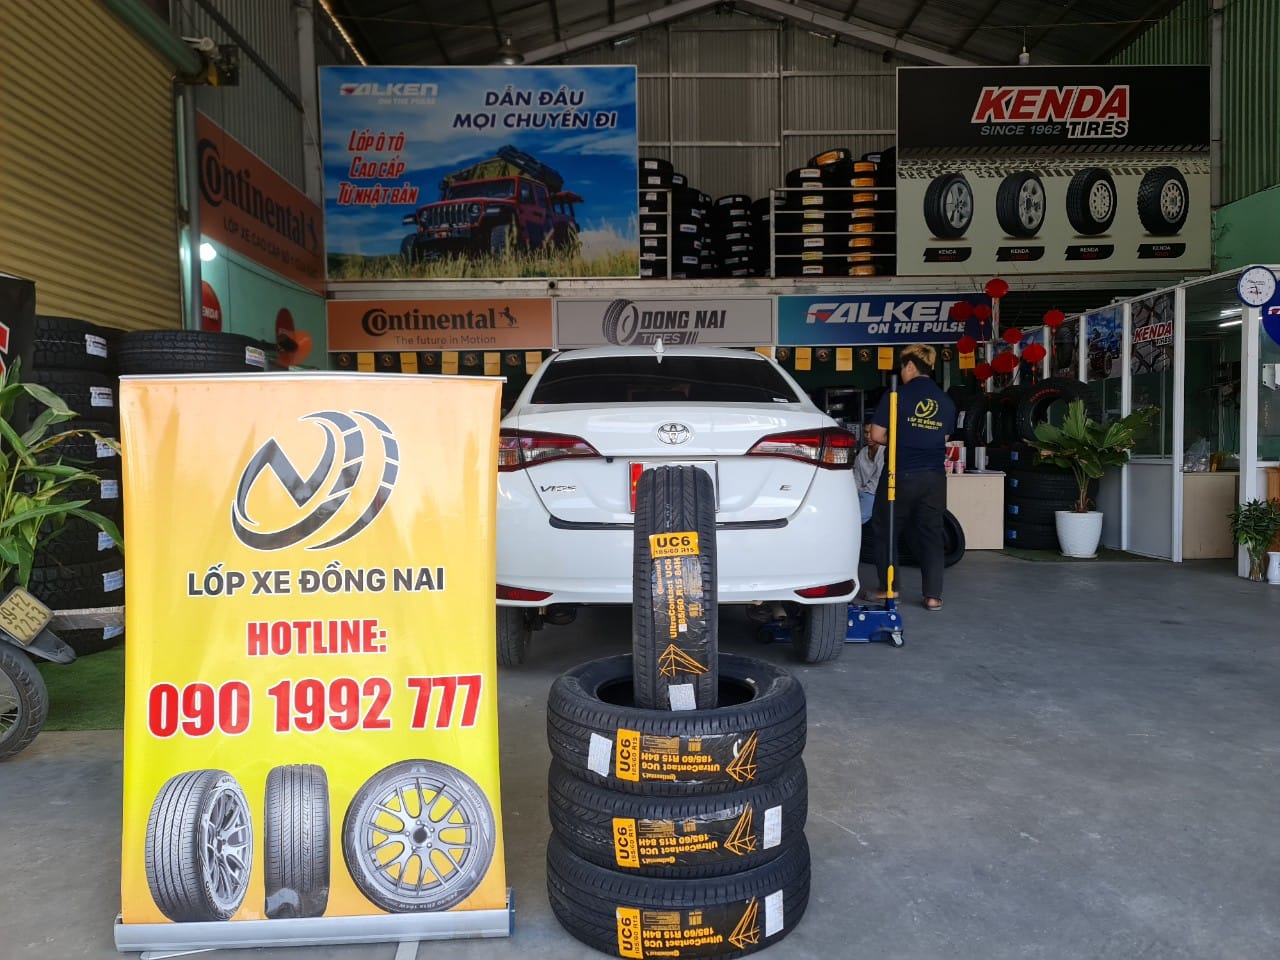 TƯ VẤN : Thay lốp xe Toyota Vios chính hãng ở Biên Hoà, Đồng Nai.